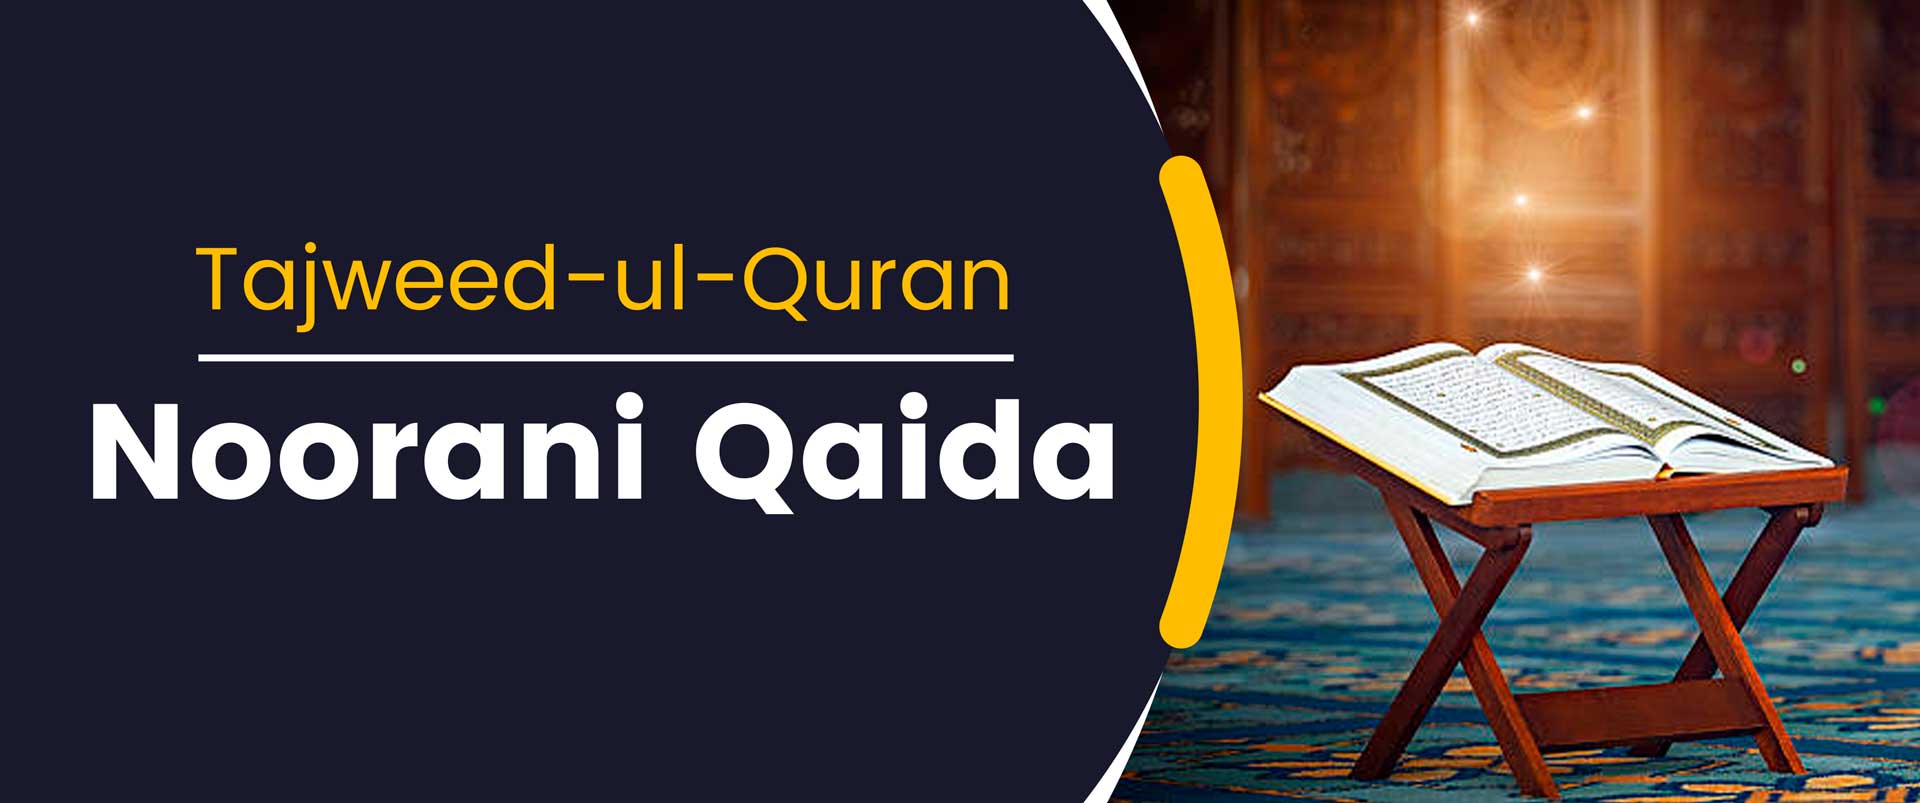 Noorani Qaida for Tajweed-ul-Quran